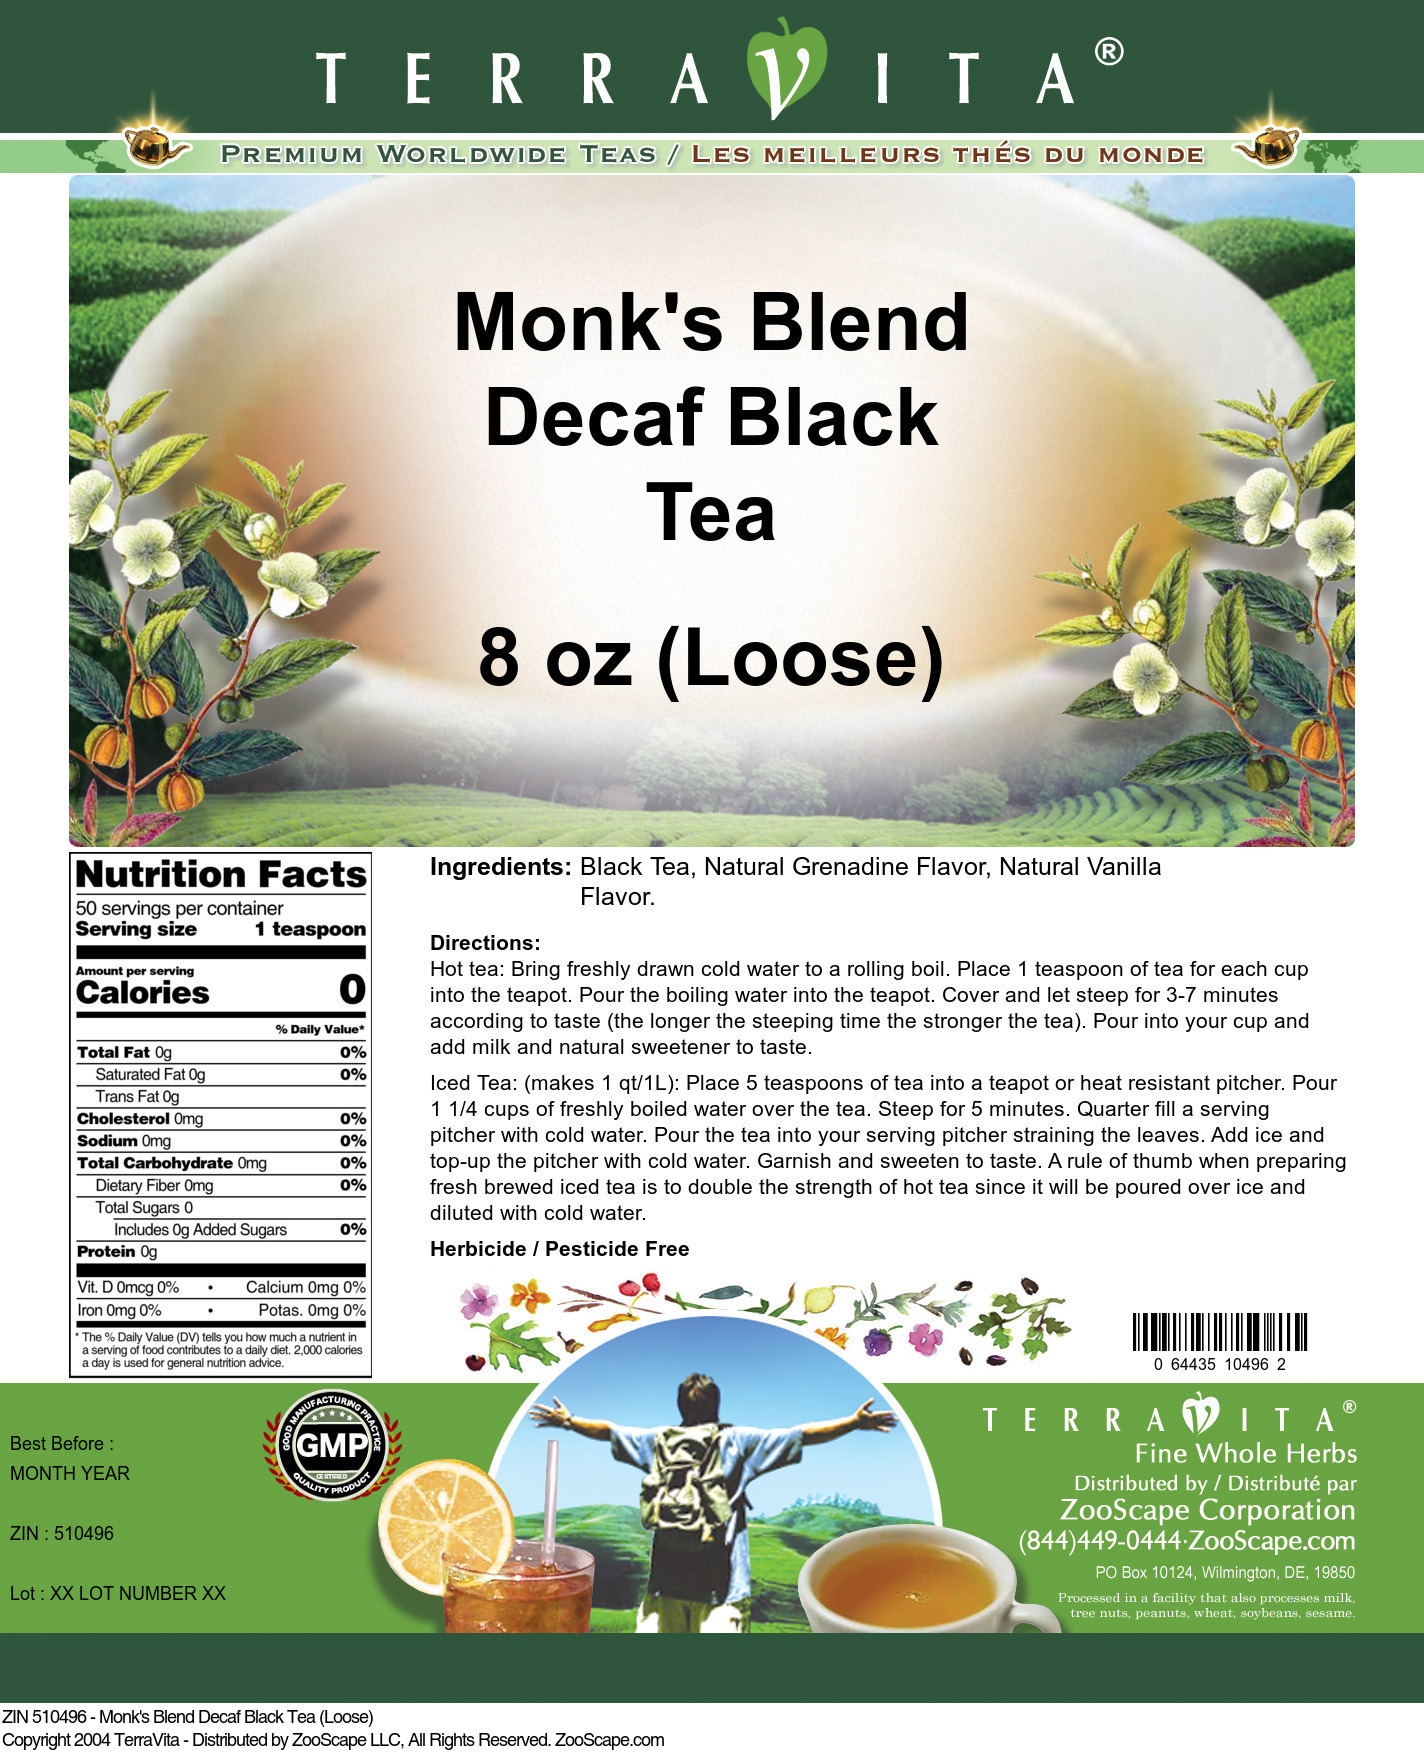 Monk's Blend Decaf Black Tea (Loose) - Label